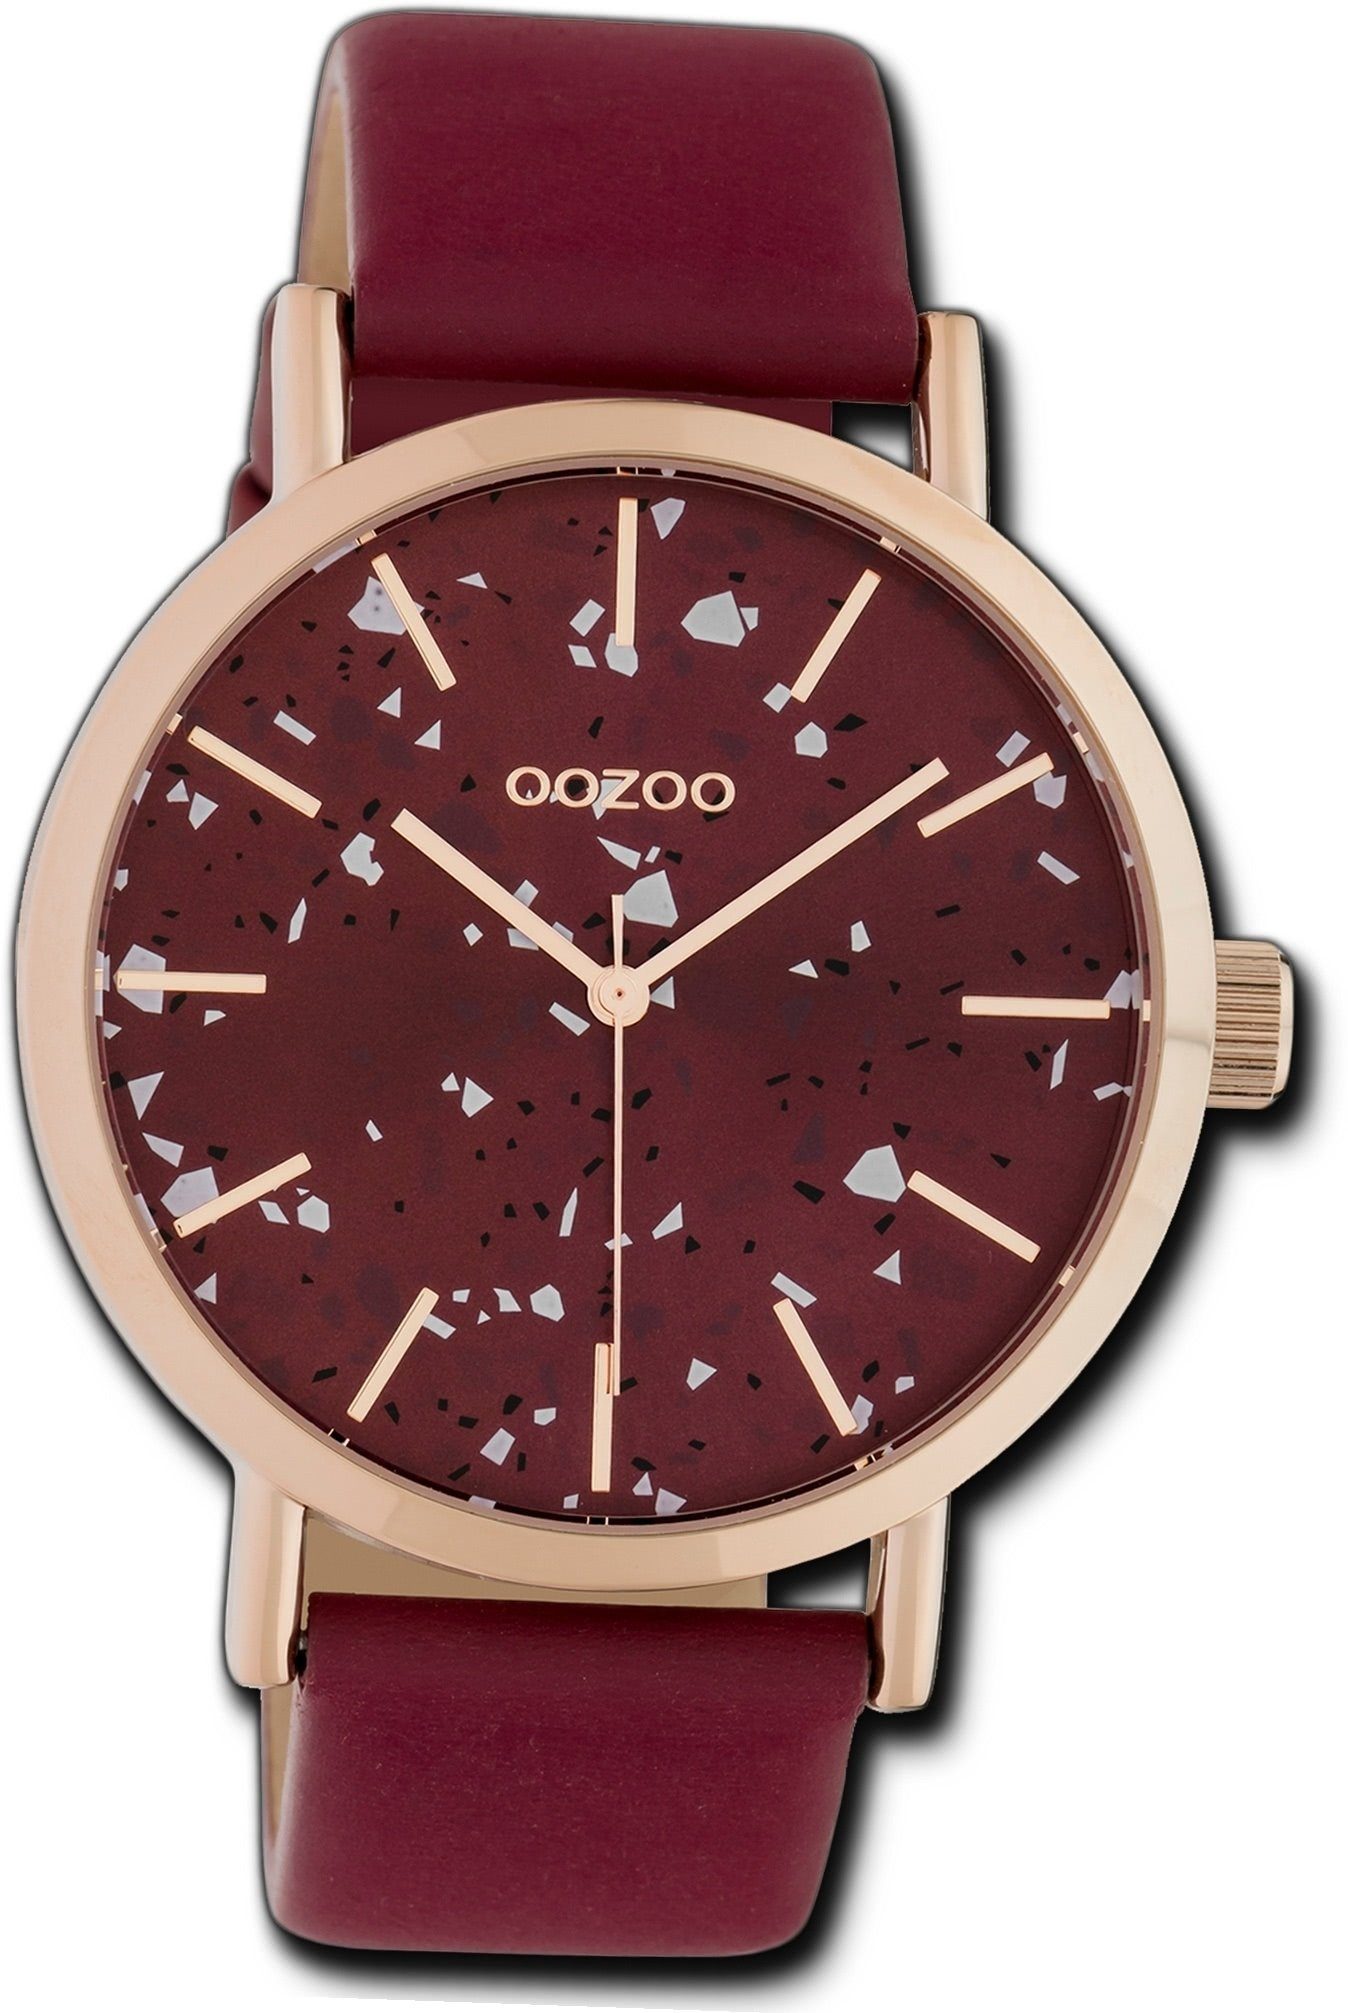 OOZOO Quarzuhr Oozoo Leder Damen Uhr C10412 Analog, Damenuhr Lederarmband weinrot, rundes Gehäuse, groß (ca. 42mm)